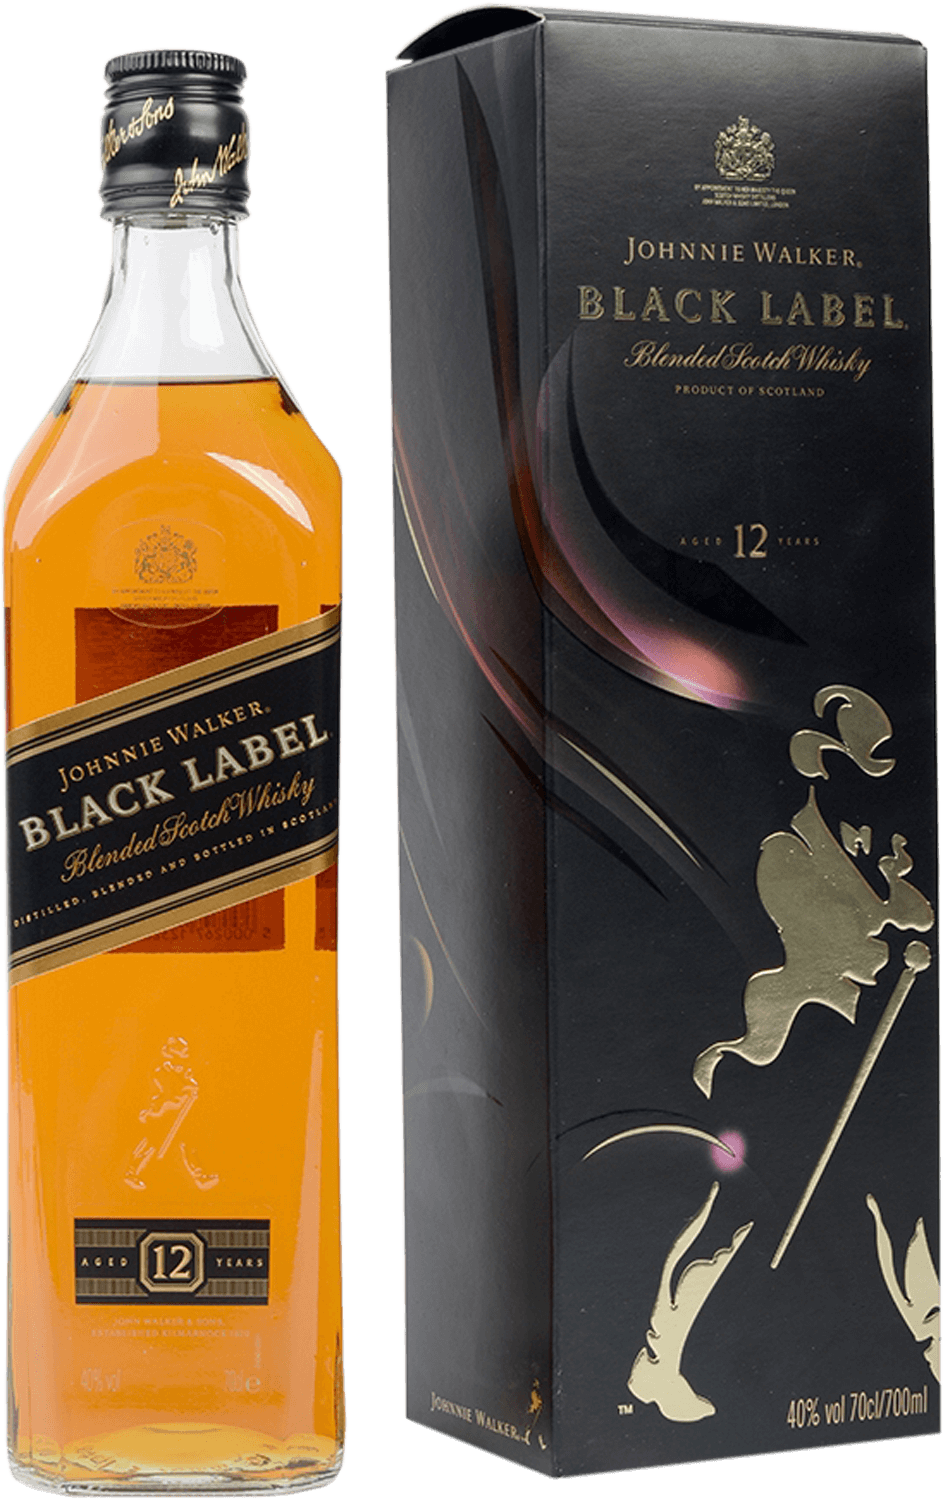 Johnnie Walker Black Label Blended Scotch Whisky (gift box) johnnie walker black label blended scotch whisky